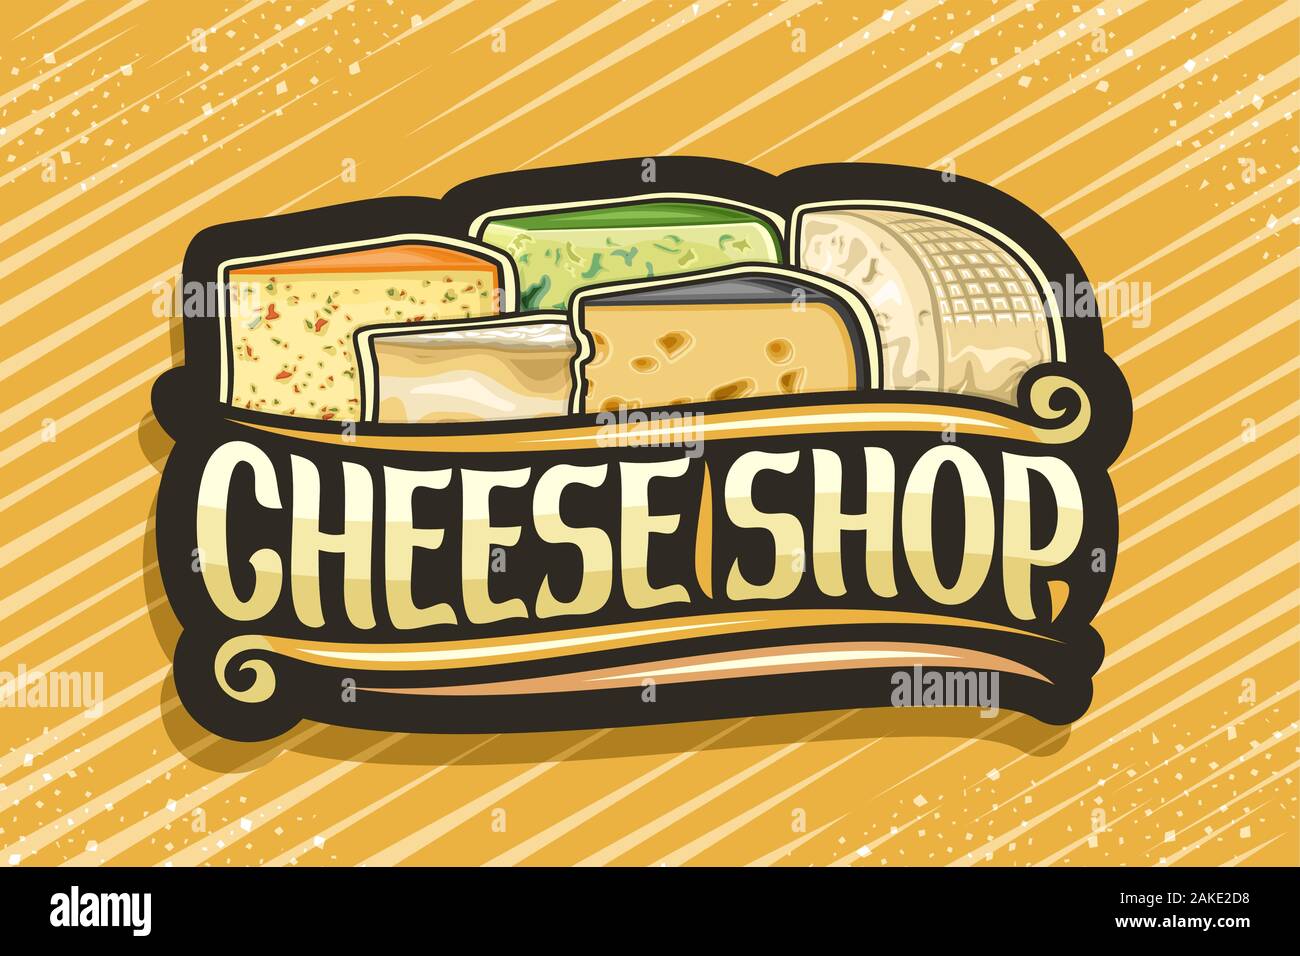 Vektor logo für Käse Shop, dunkle dekorative Aufkleber mit Darstellung der vielen verschiedenen Käse, Scheiben, design Schild mit original brush Schrift für Stock Vektor